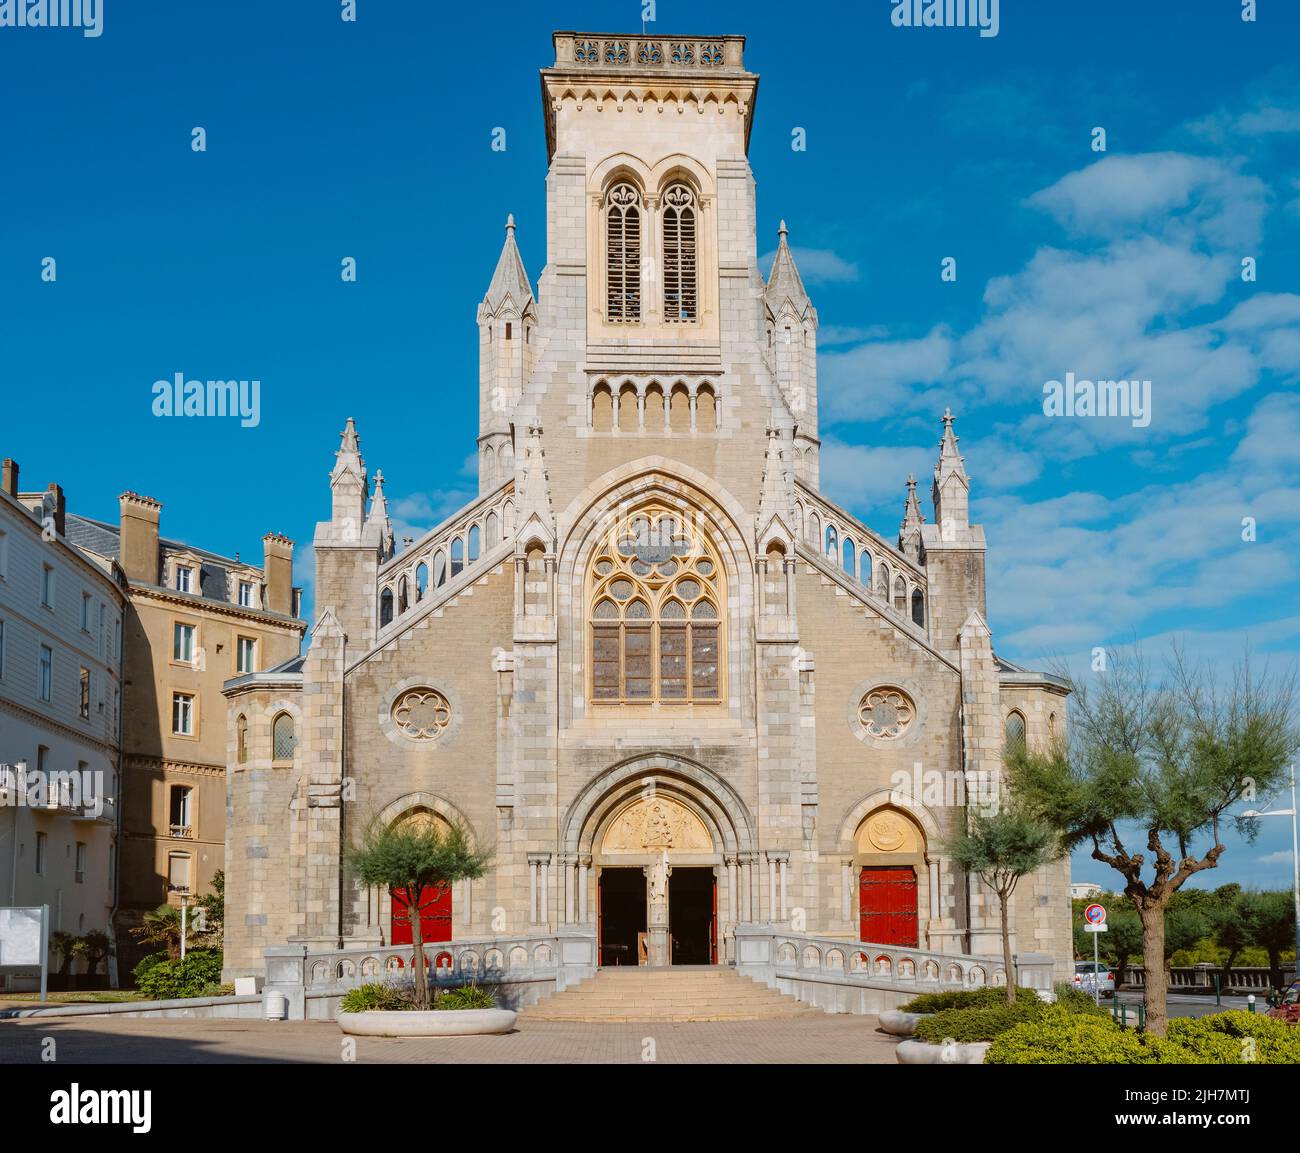 Vista de la fachada principal de la Iglesia Sainte-Eugenie en Biarritz, Francia Foto de stock